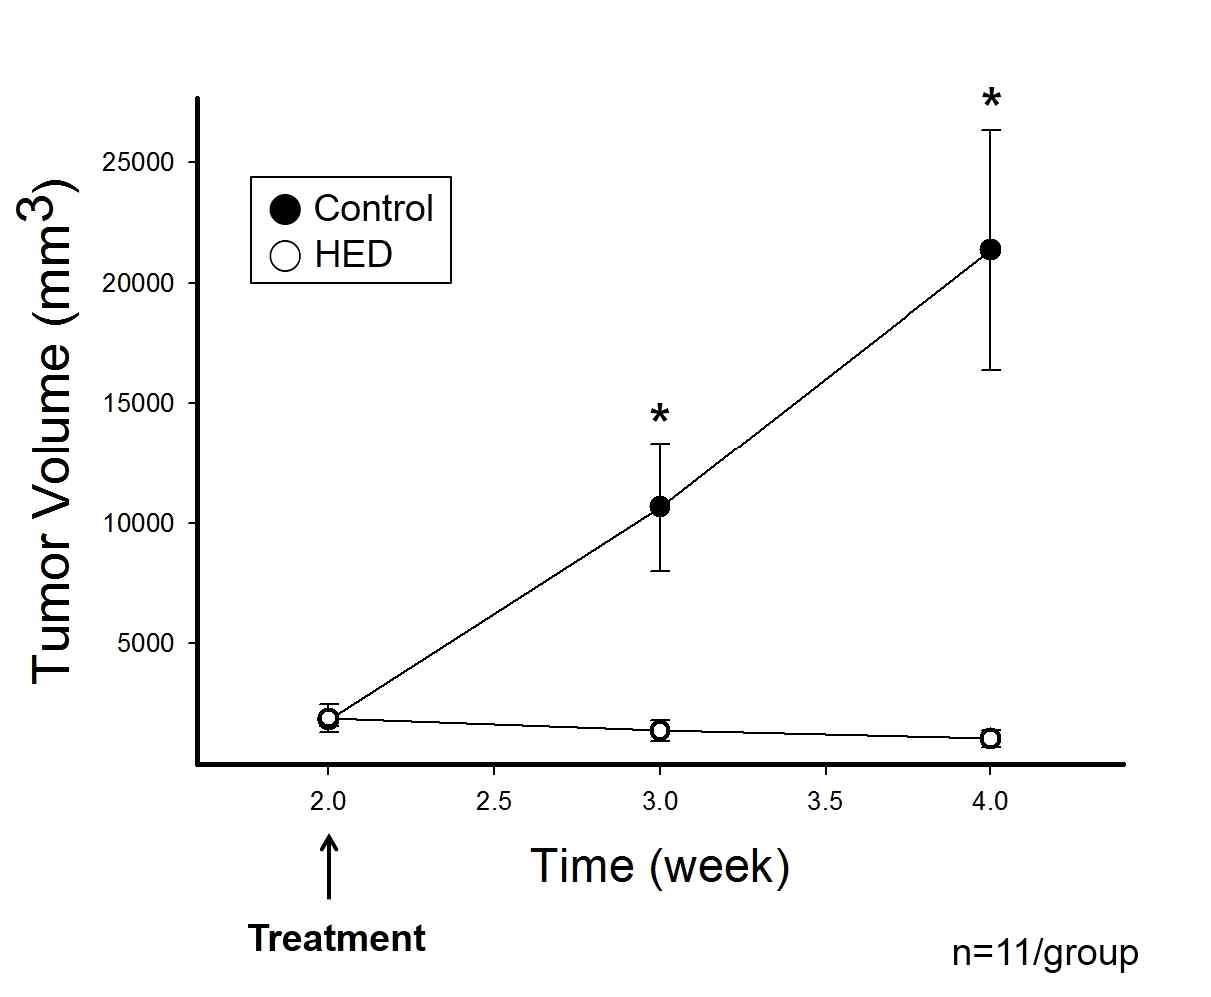 대조군과 HED 처리군의 시간별 종양 부피 비교 (4주, n=11)